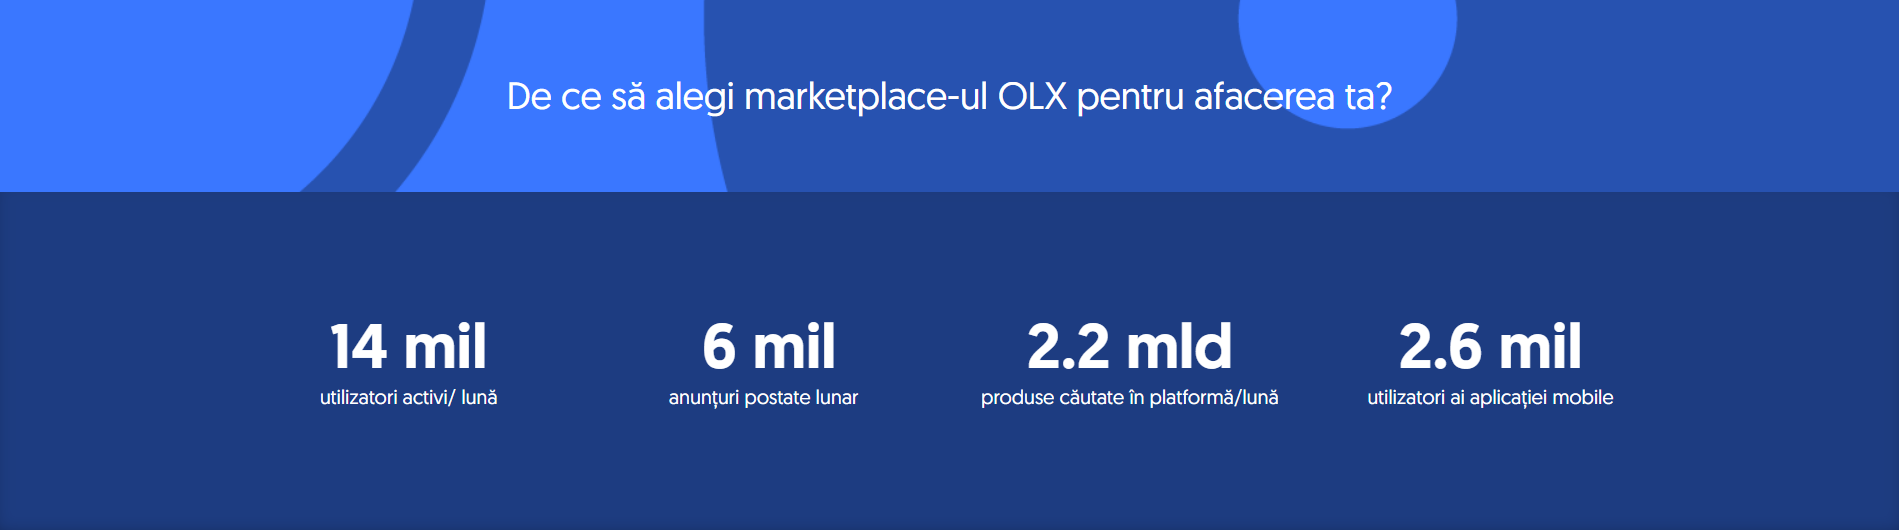 Ce oferă OLX ca platformă marketplace